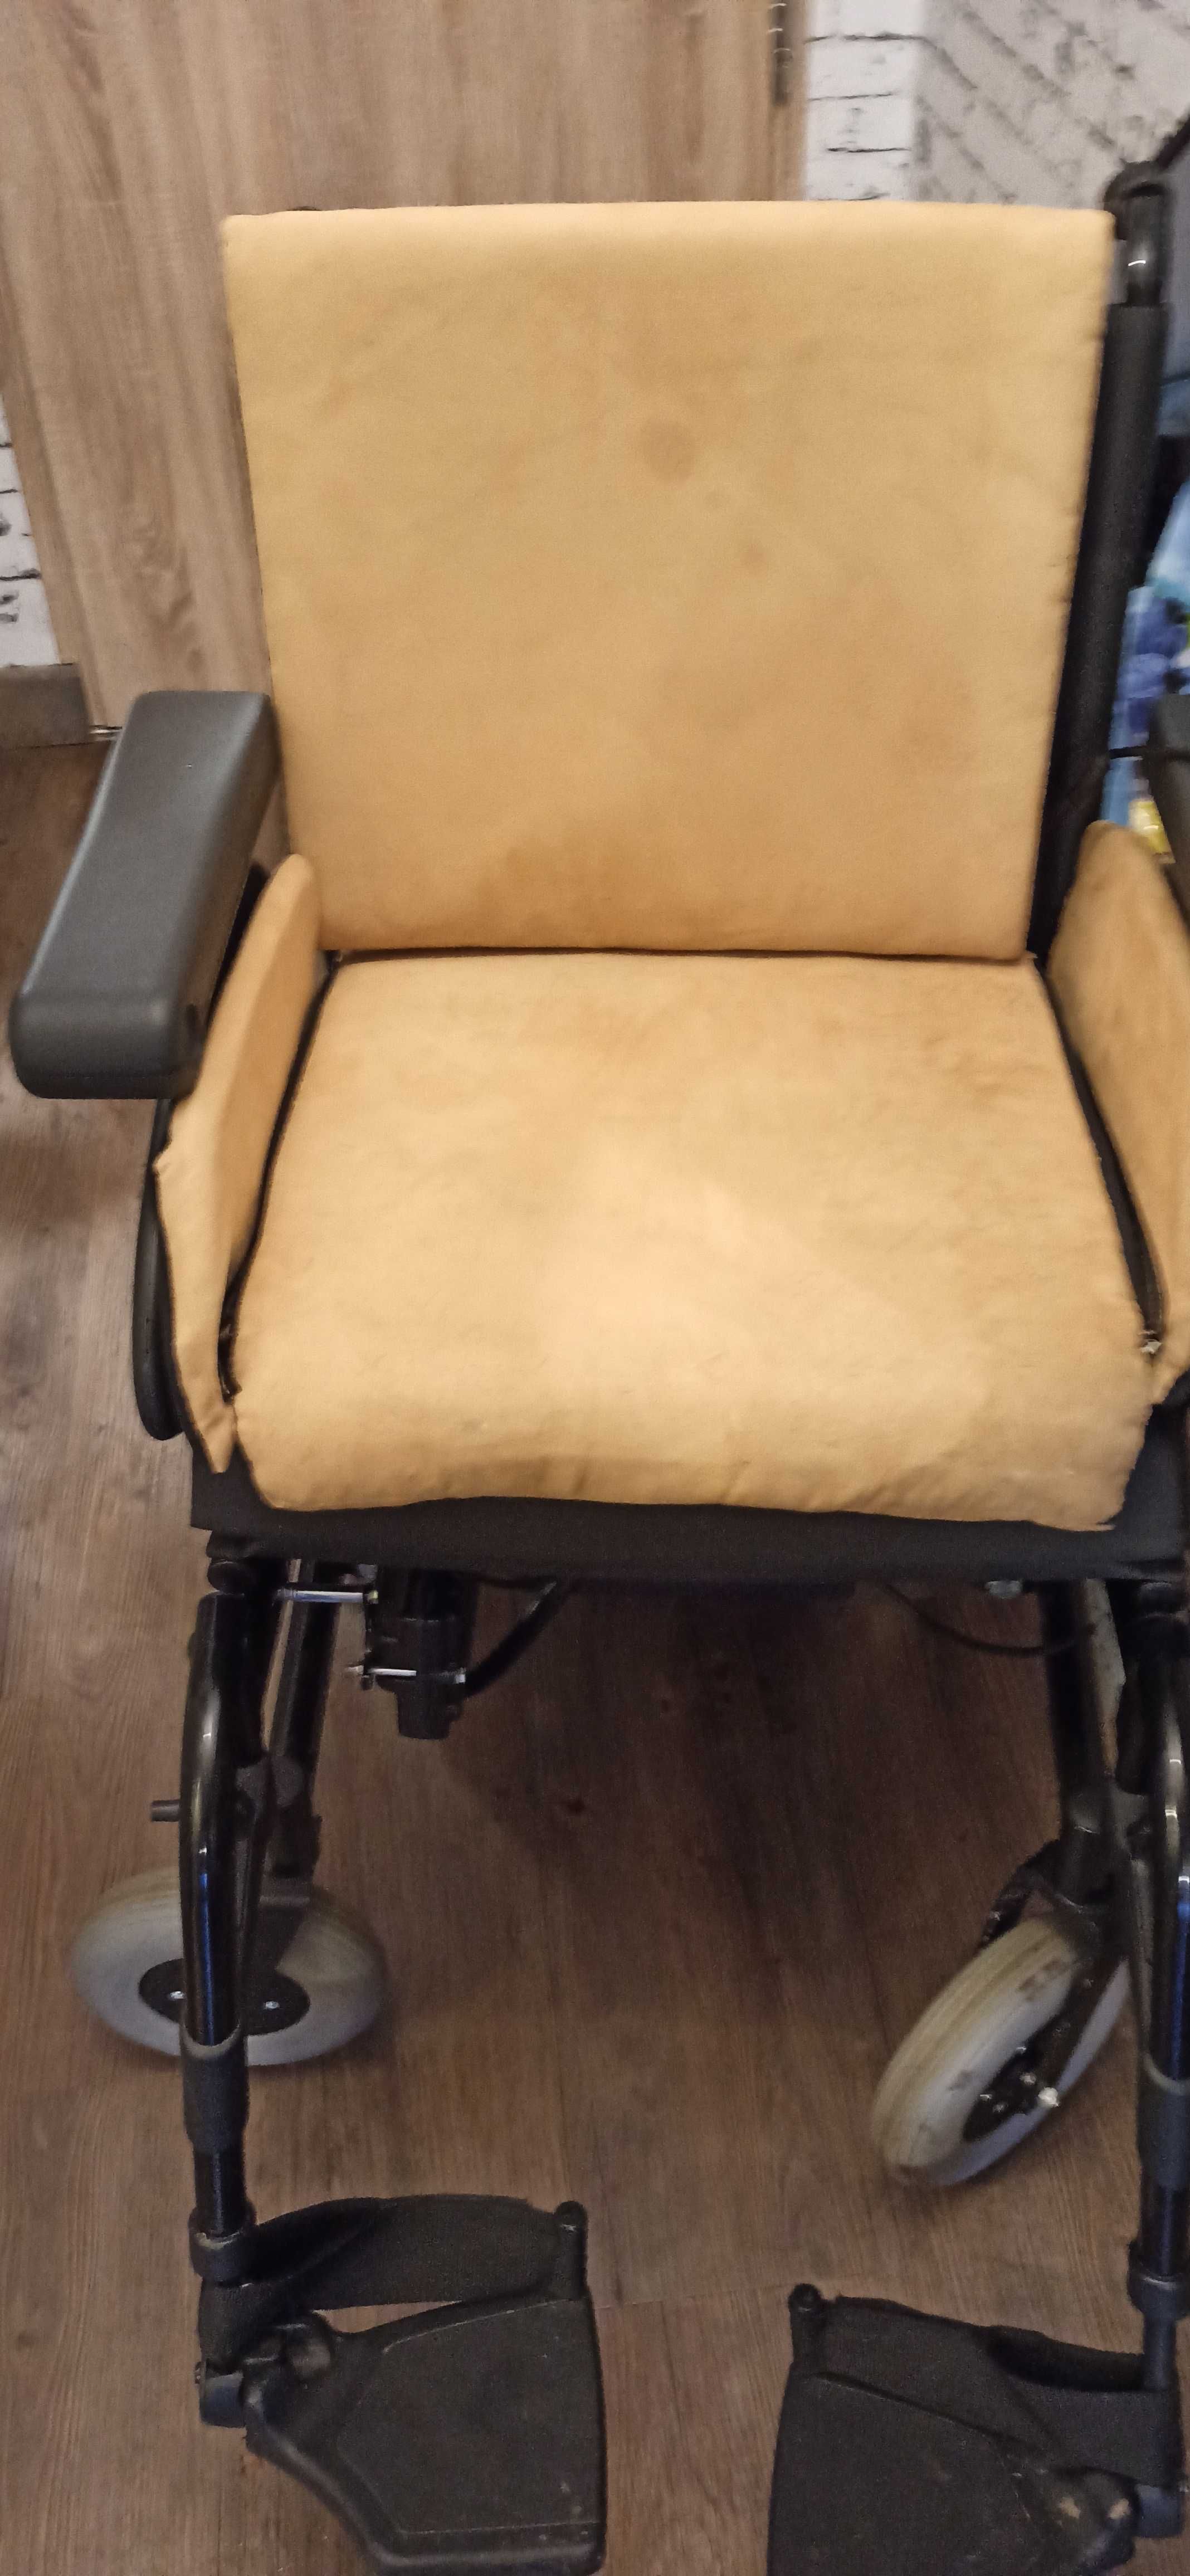 Wózek inwalidzki mata grzewcza